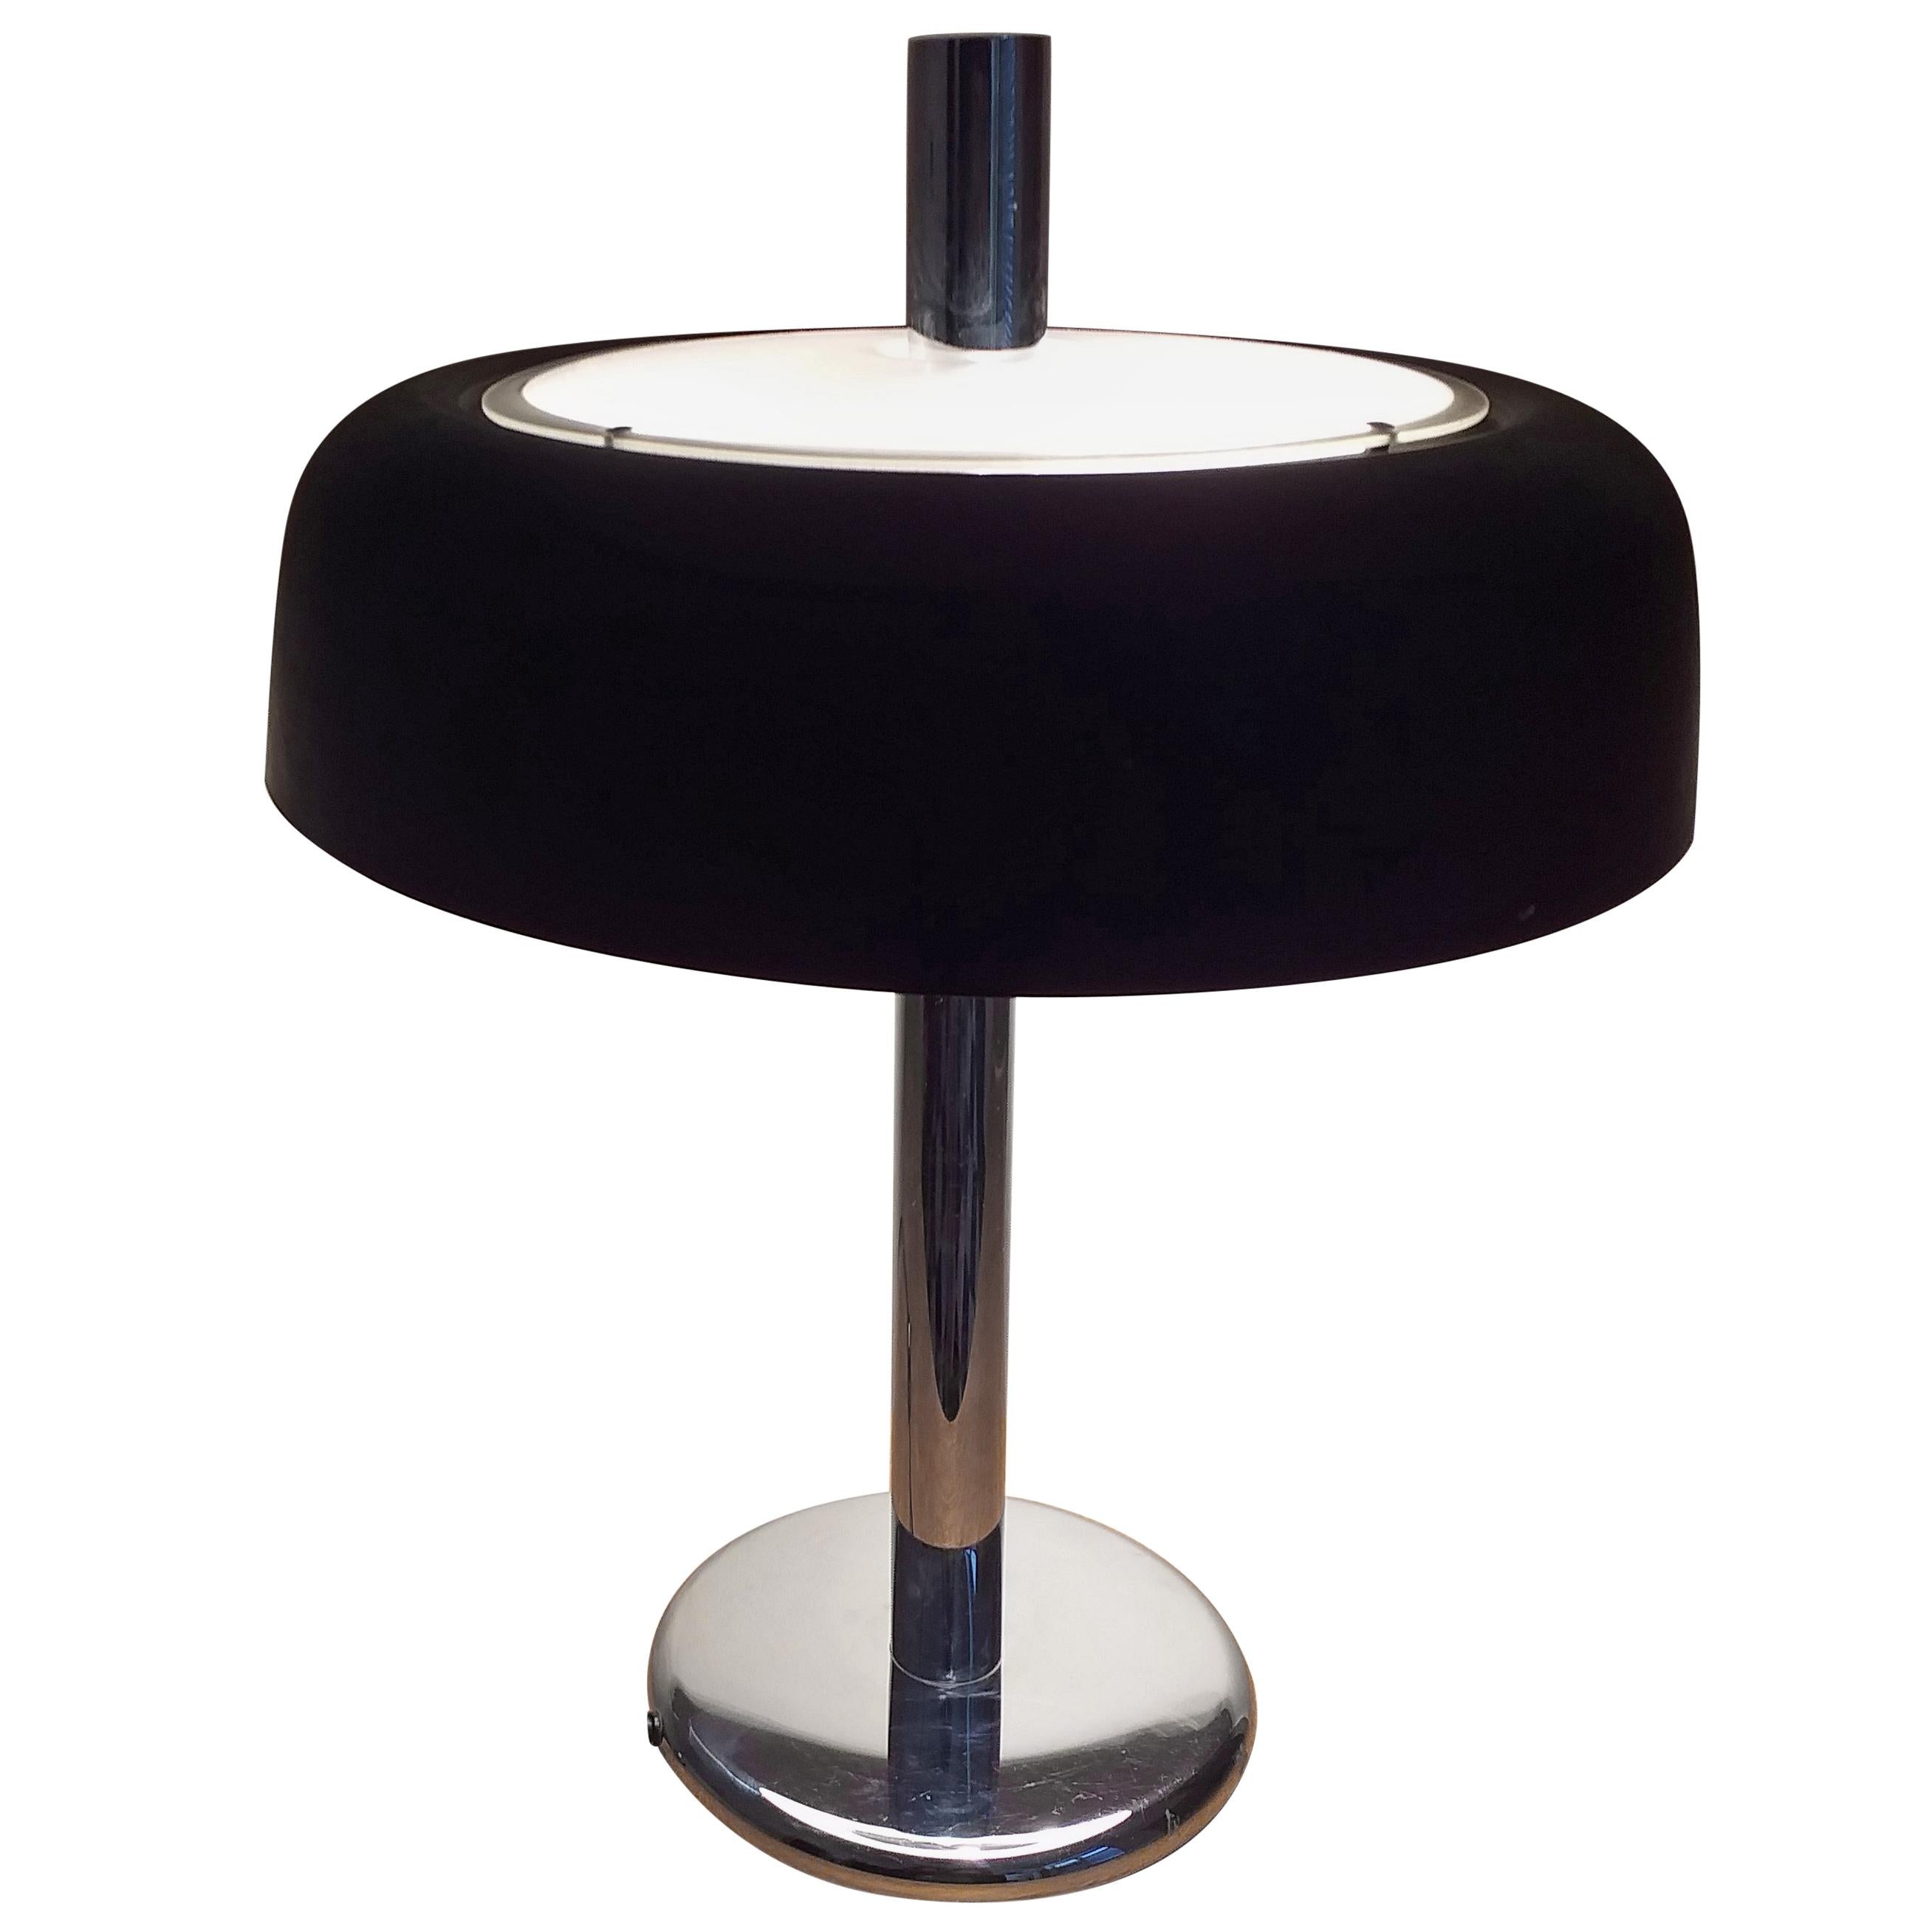 Big Midcentury Table Lamp, Mushroom, Hillebrand, 1970s